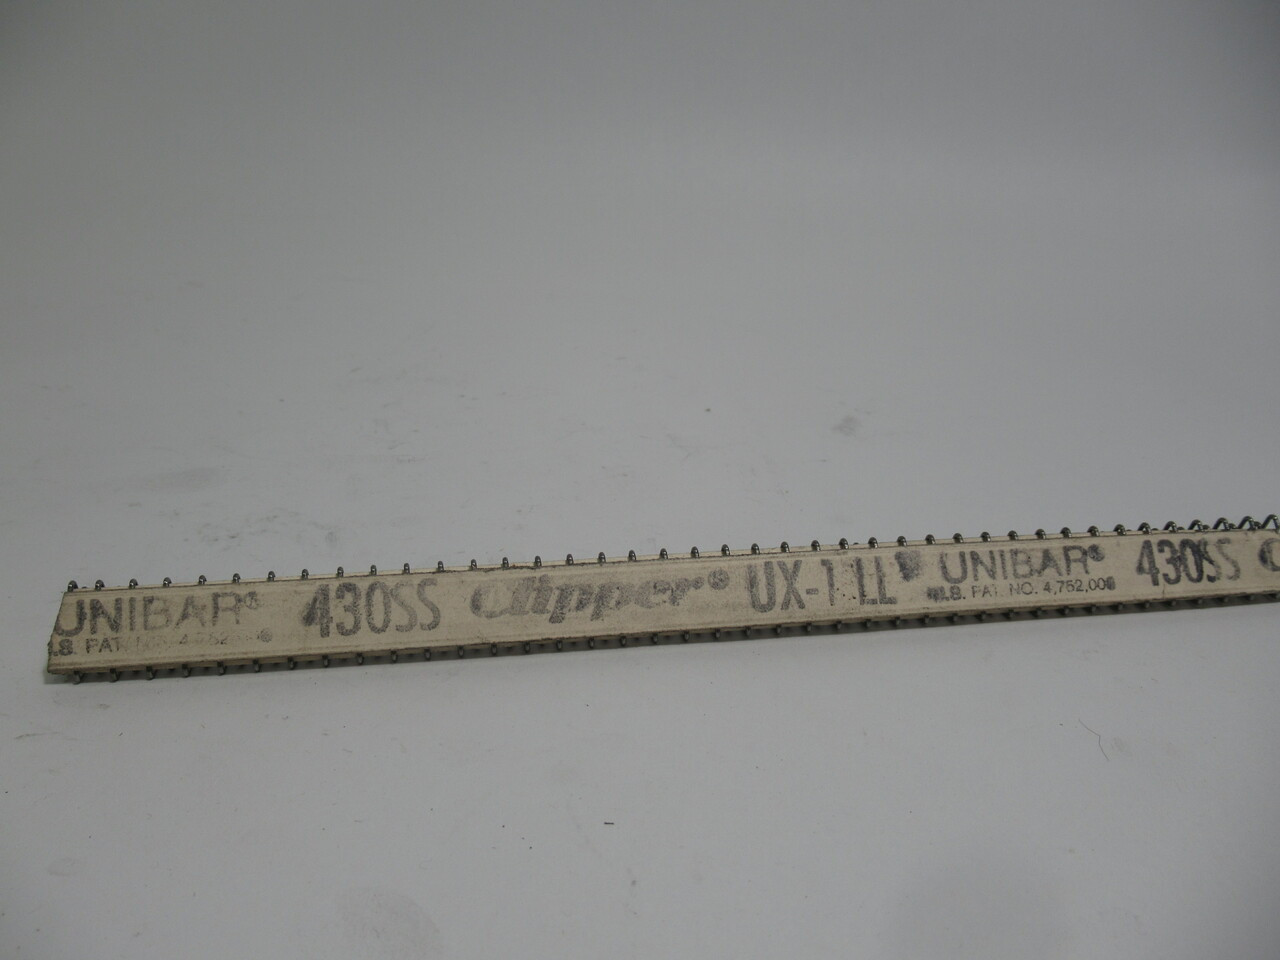 Clipper UX-1LLS 430SS Unibar Hook Size 10" Length NOP